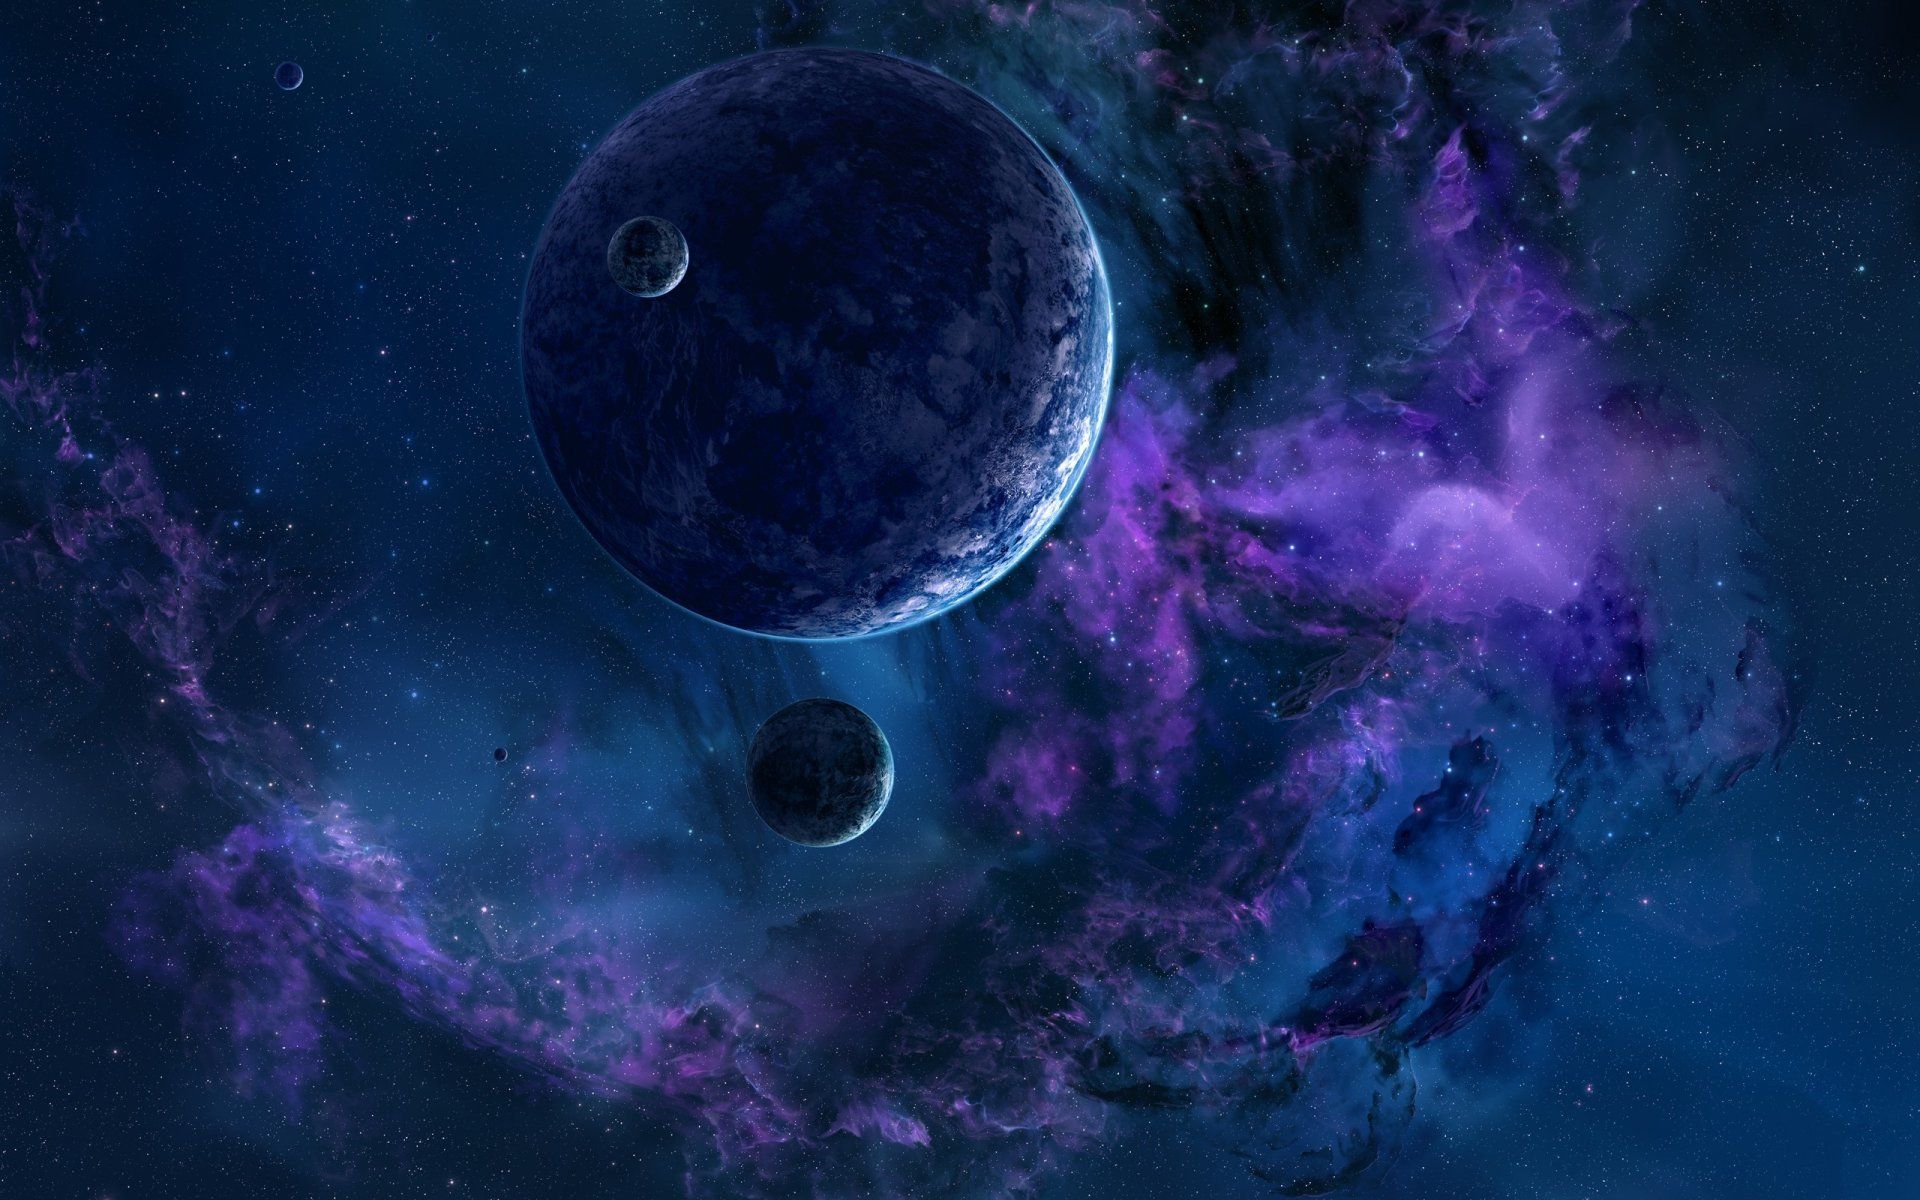 Space Planets Nebula Blue Lila fondos de pantalla | Nebulosa de los planetas espaciales